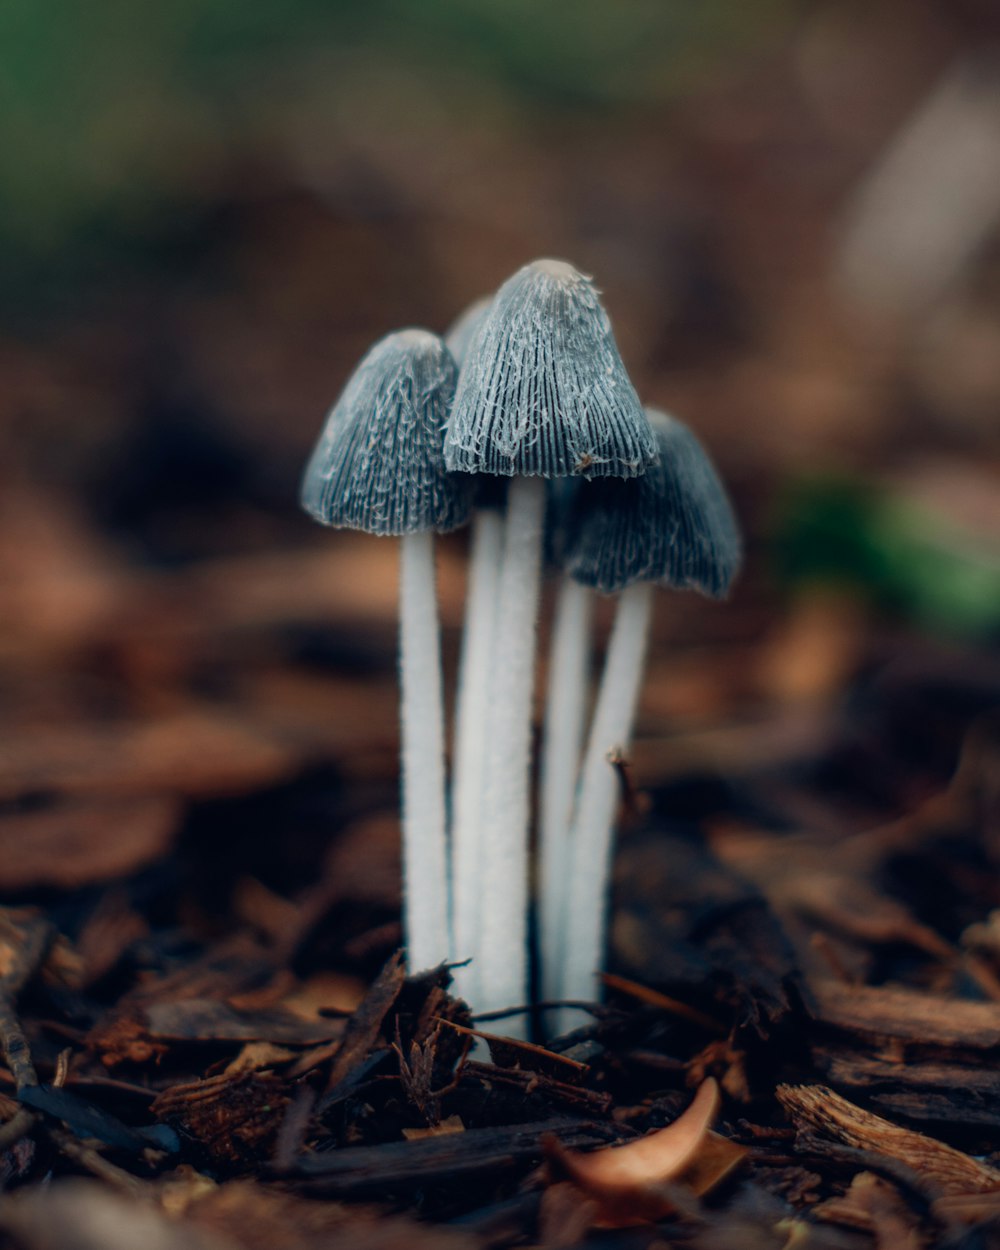 Fotografia a fuoco selettivo di funghi grigi e bianchi